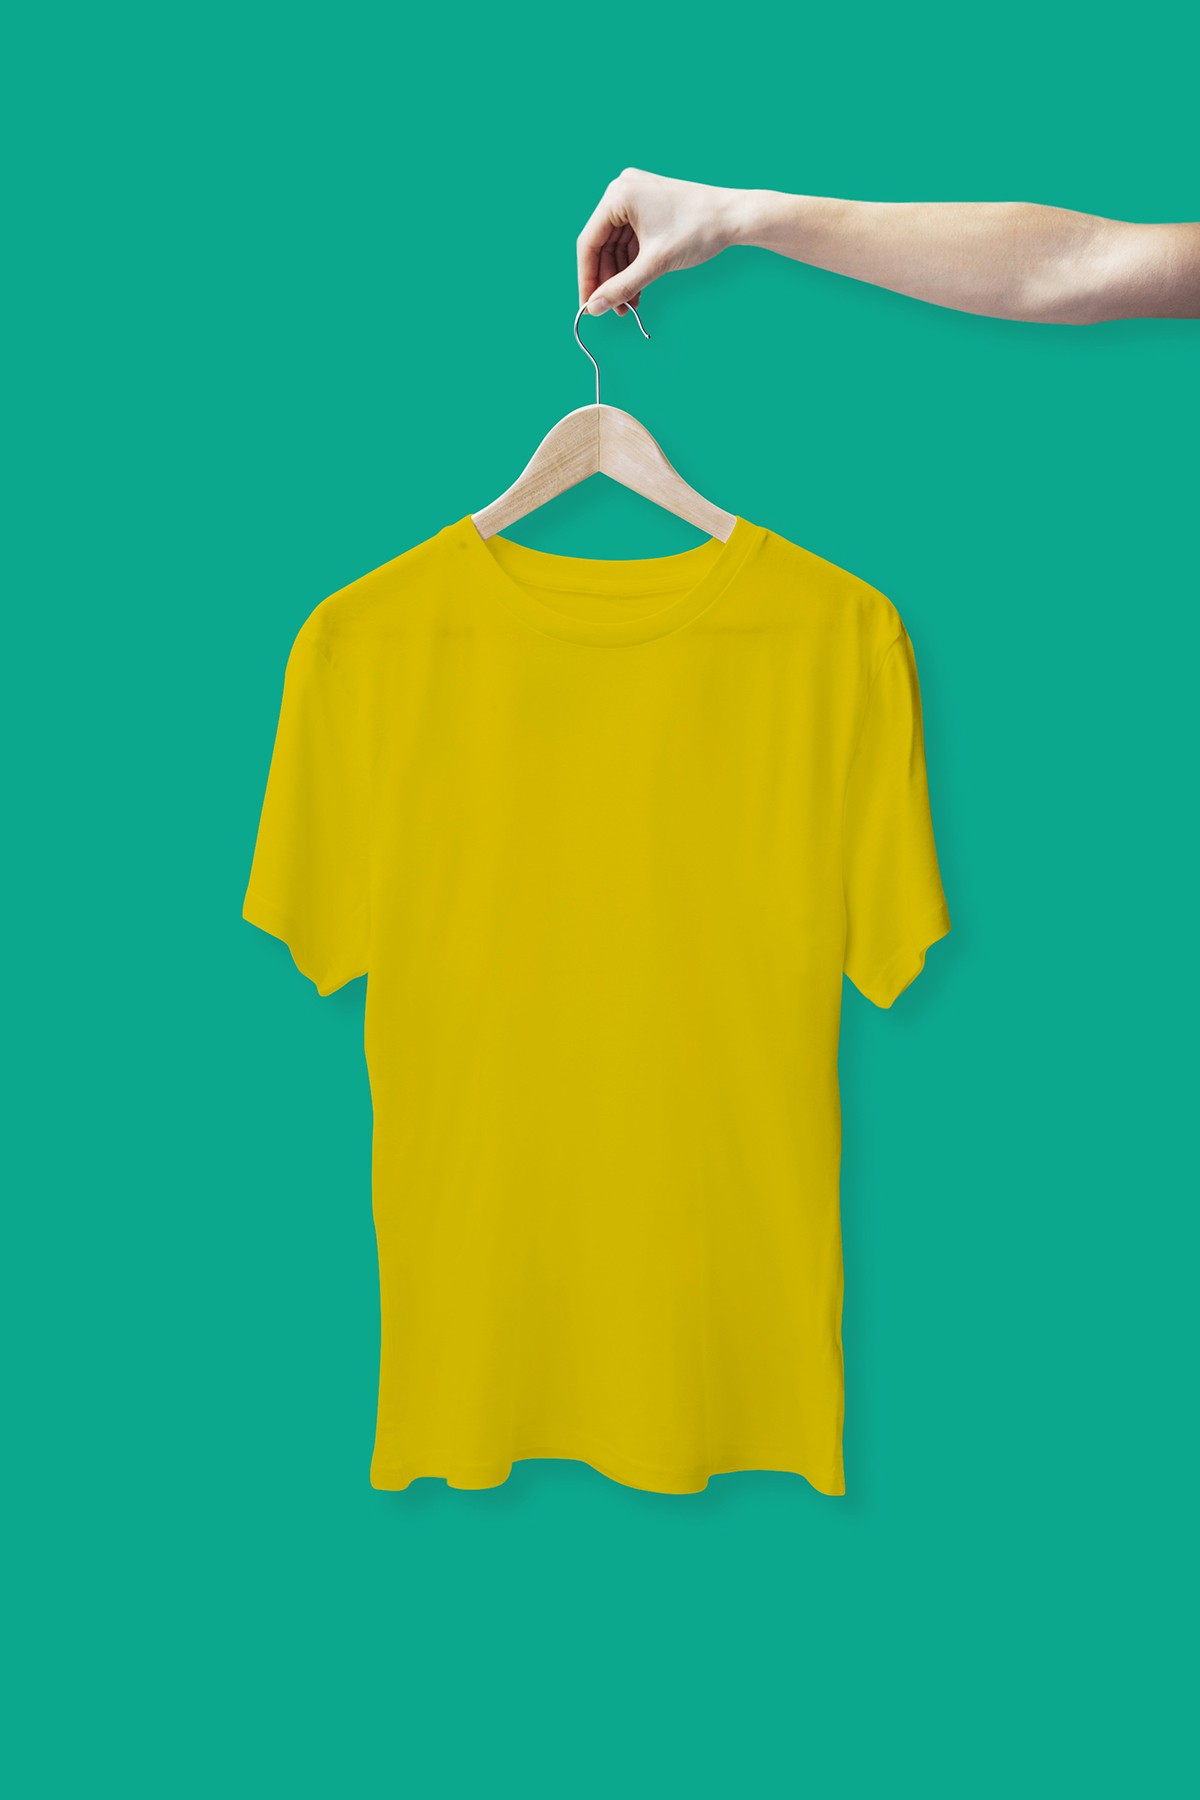 黄色T恤样机1